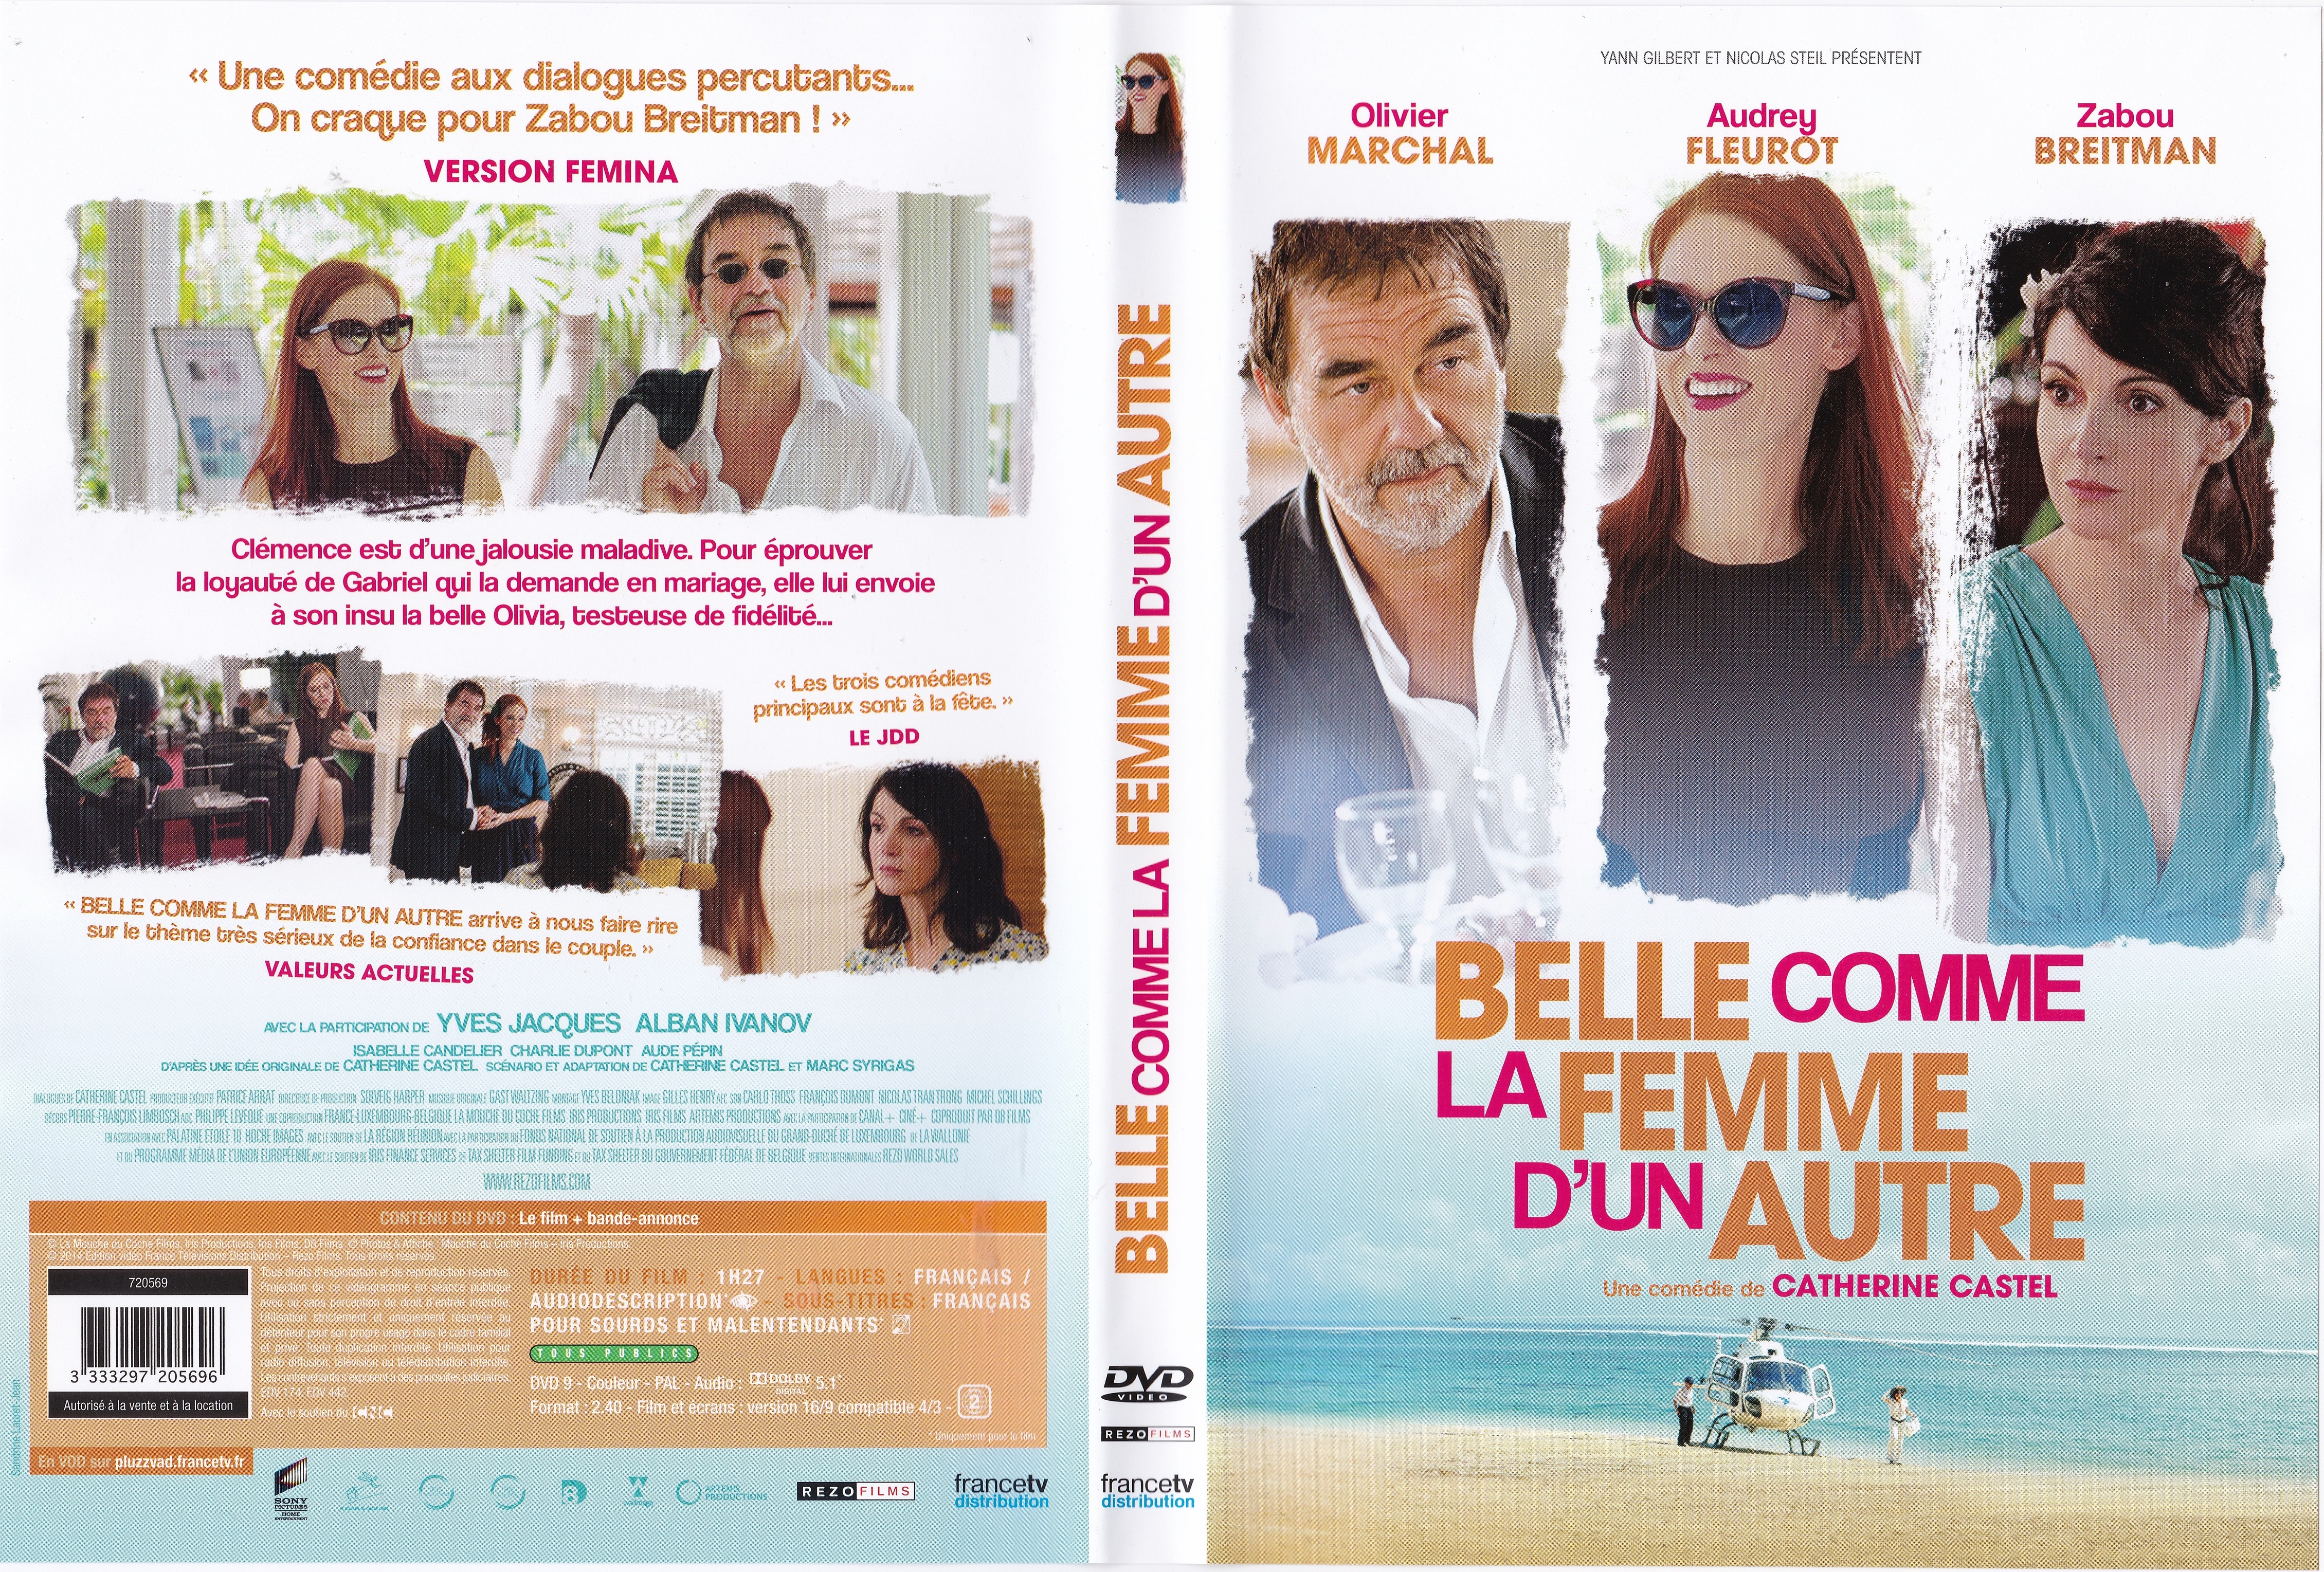 Jaquette DVD Belle Comme la Femme d